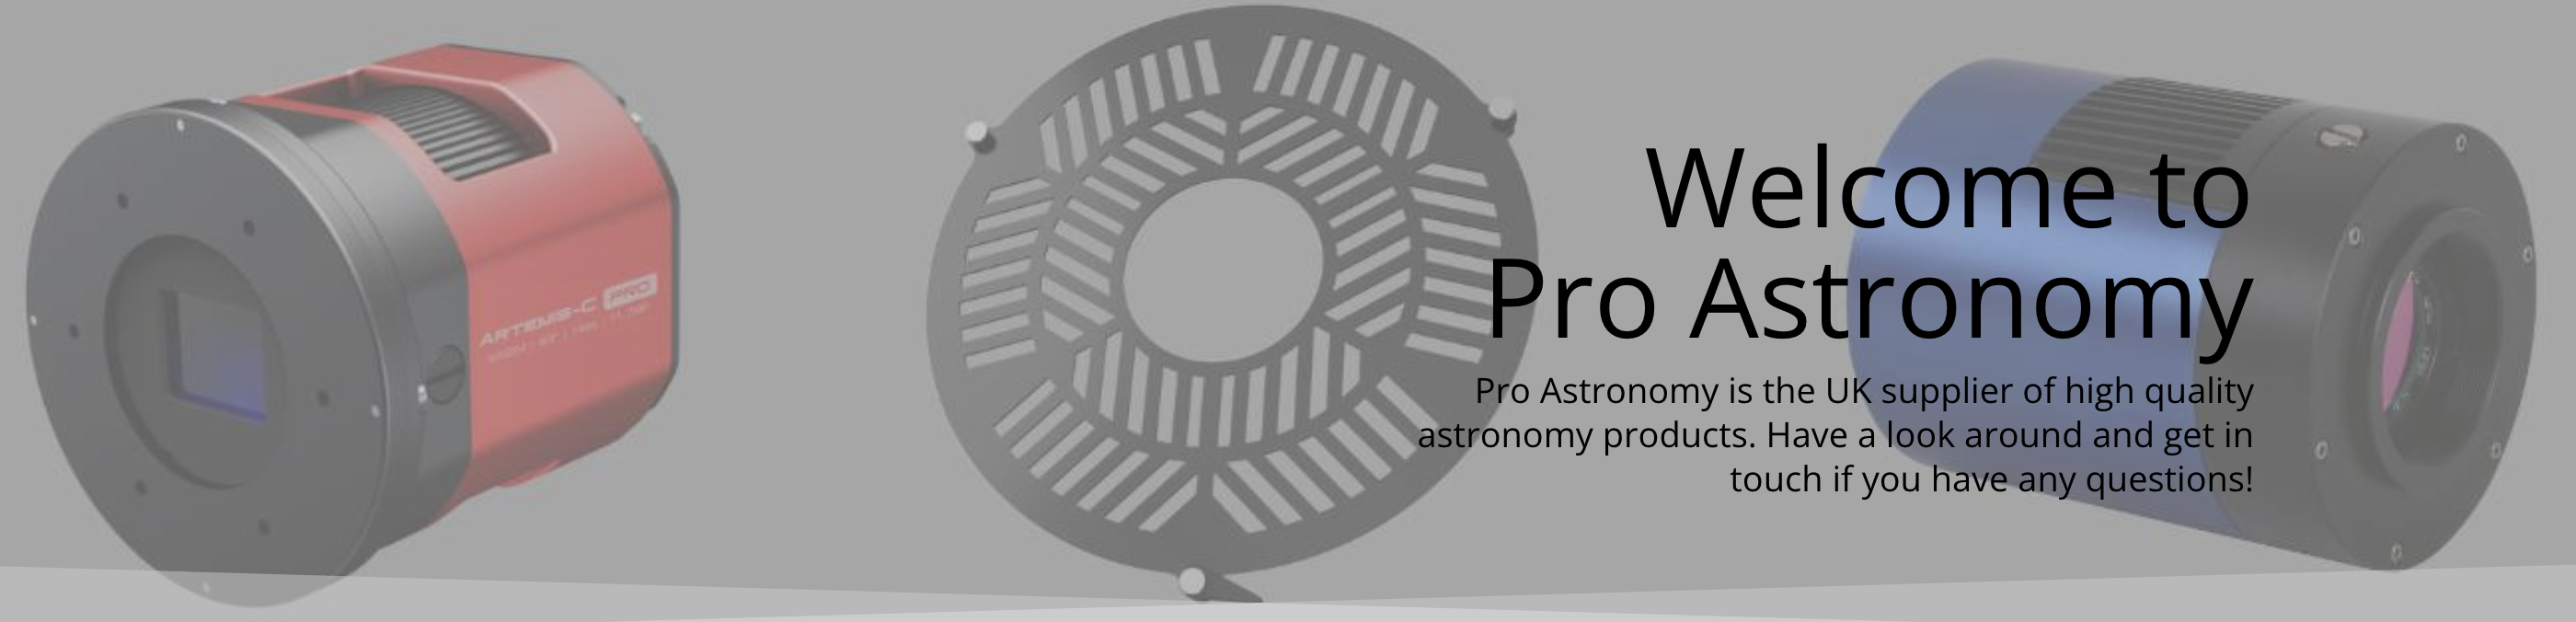 Pro Astronomy